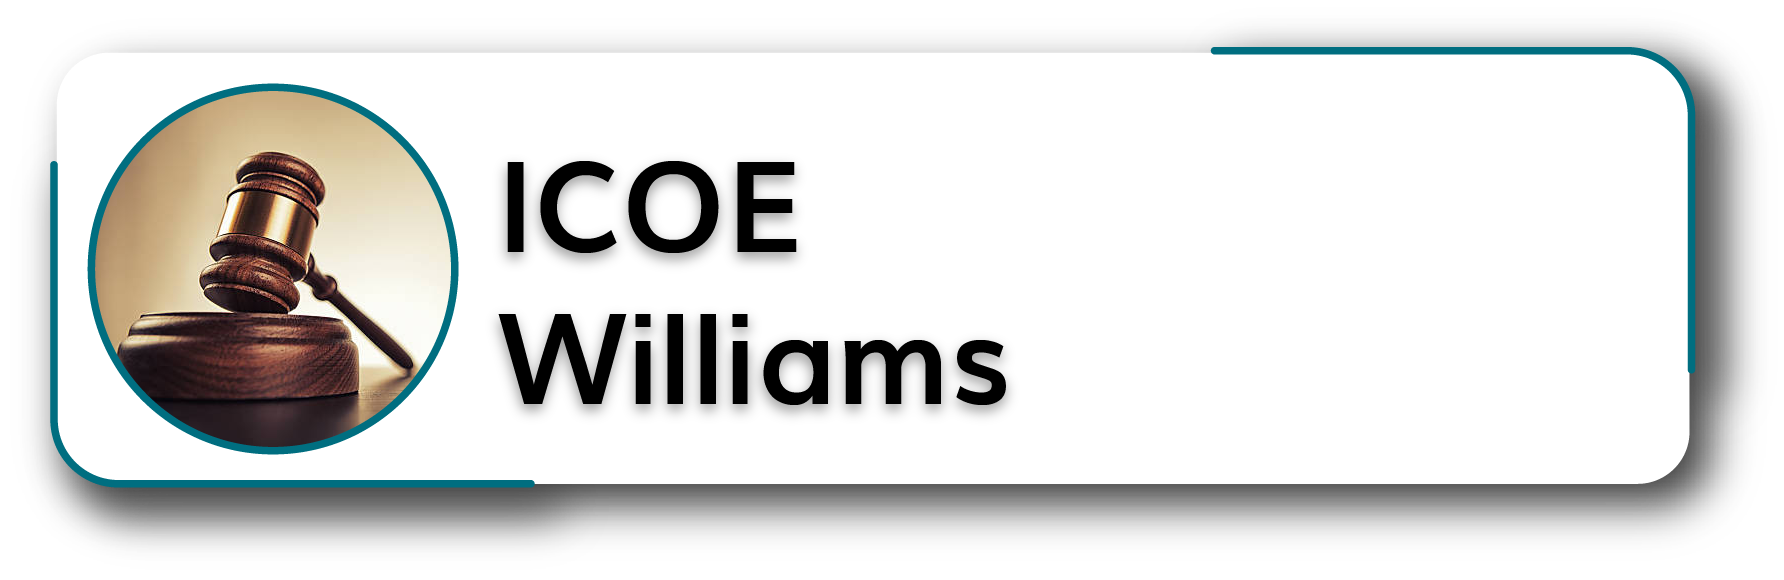 ICOE Williams Button